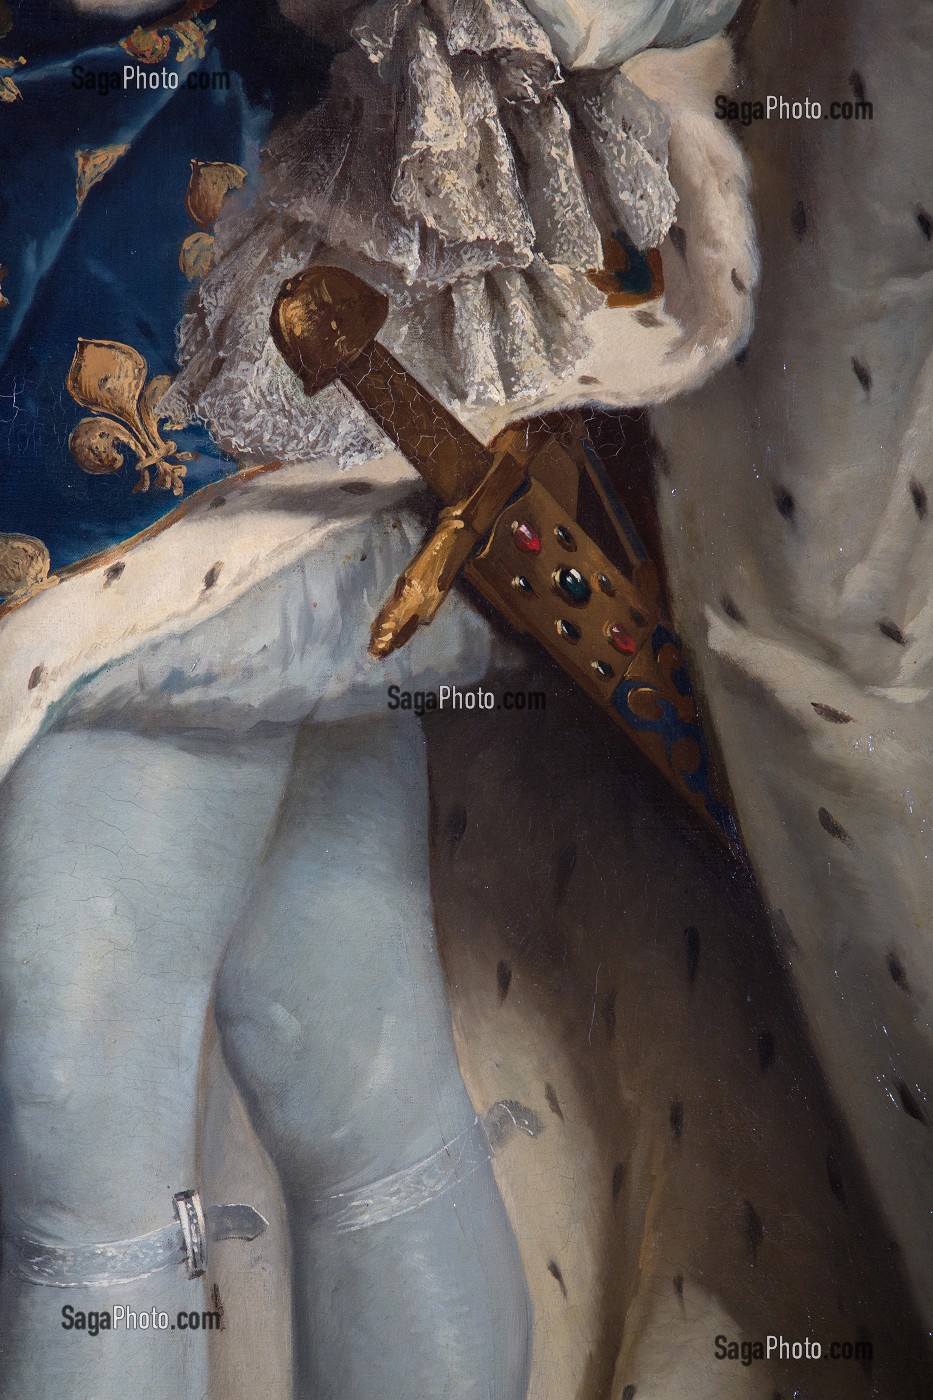 DETAIL DE L'EPEE ‘ICI JOYEUSE’ RAPPELANT QUE LE ROI EST LE CHEF DES ARMEES, PORTRAIT DE LOUIS XIV (1638-1715), ROI DE FRANCE, EN COSTUME DE SACRE, SALON DU ROI, CHATEAU DE MAINTENON, EURE-ET-LOIR (28), FRANCE 